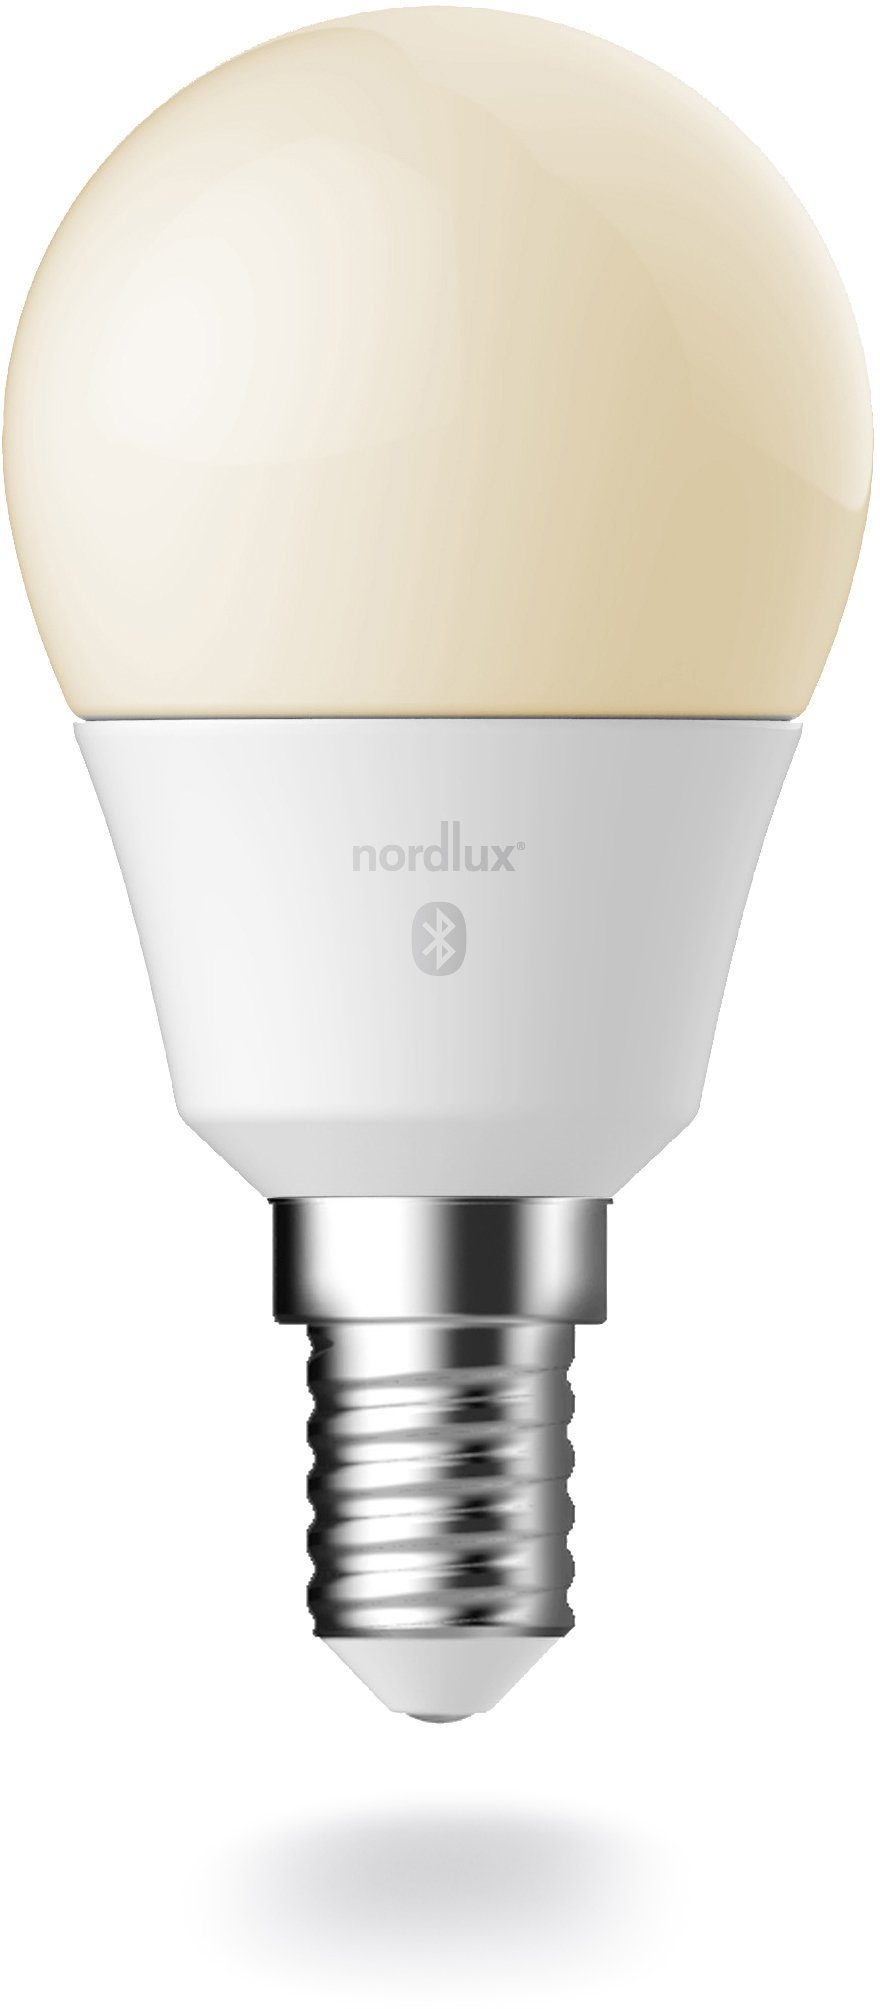 Nordlux Ledverlichting Smartlight Smart Home te bedienen, lichtsterkte, lichtkleur, met wifi of bluetooth (3 stuks)